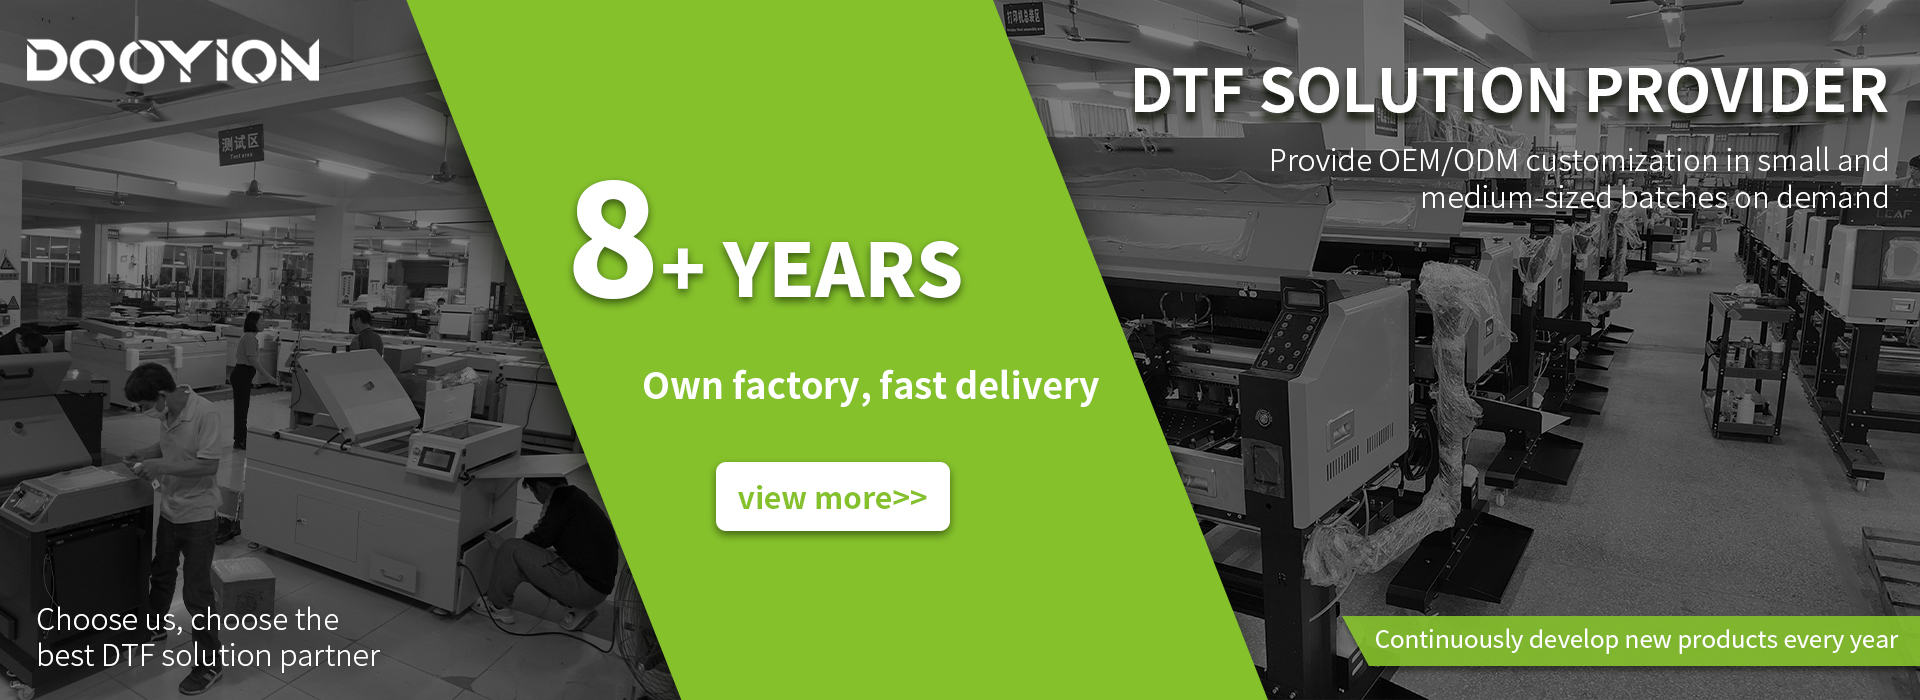 dtf factory,dtf manufacturer,dtf supplier,dtf provider,dtf solution provider